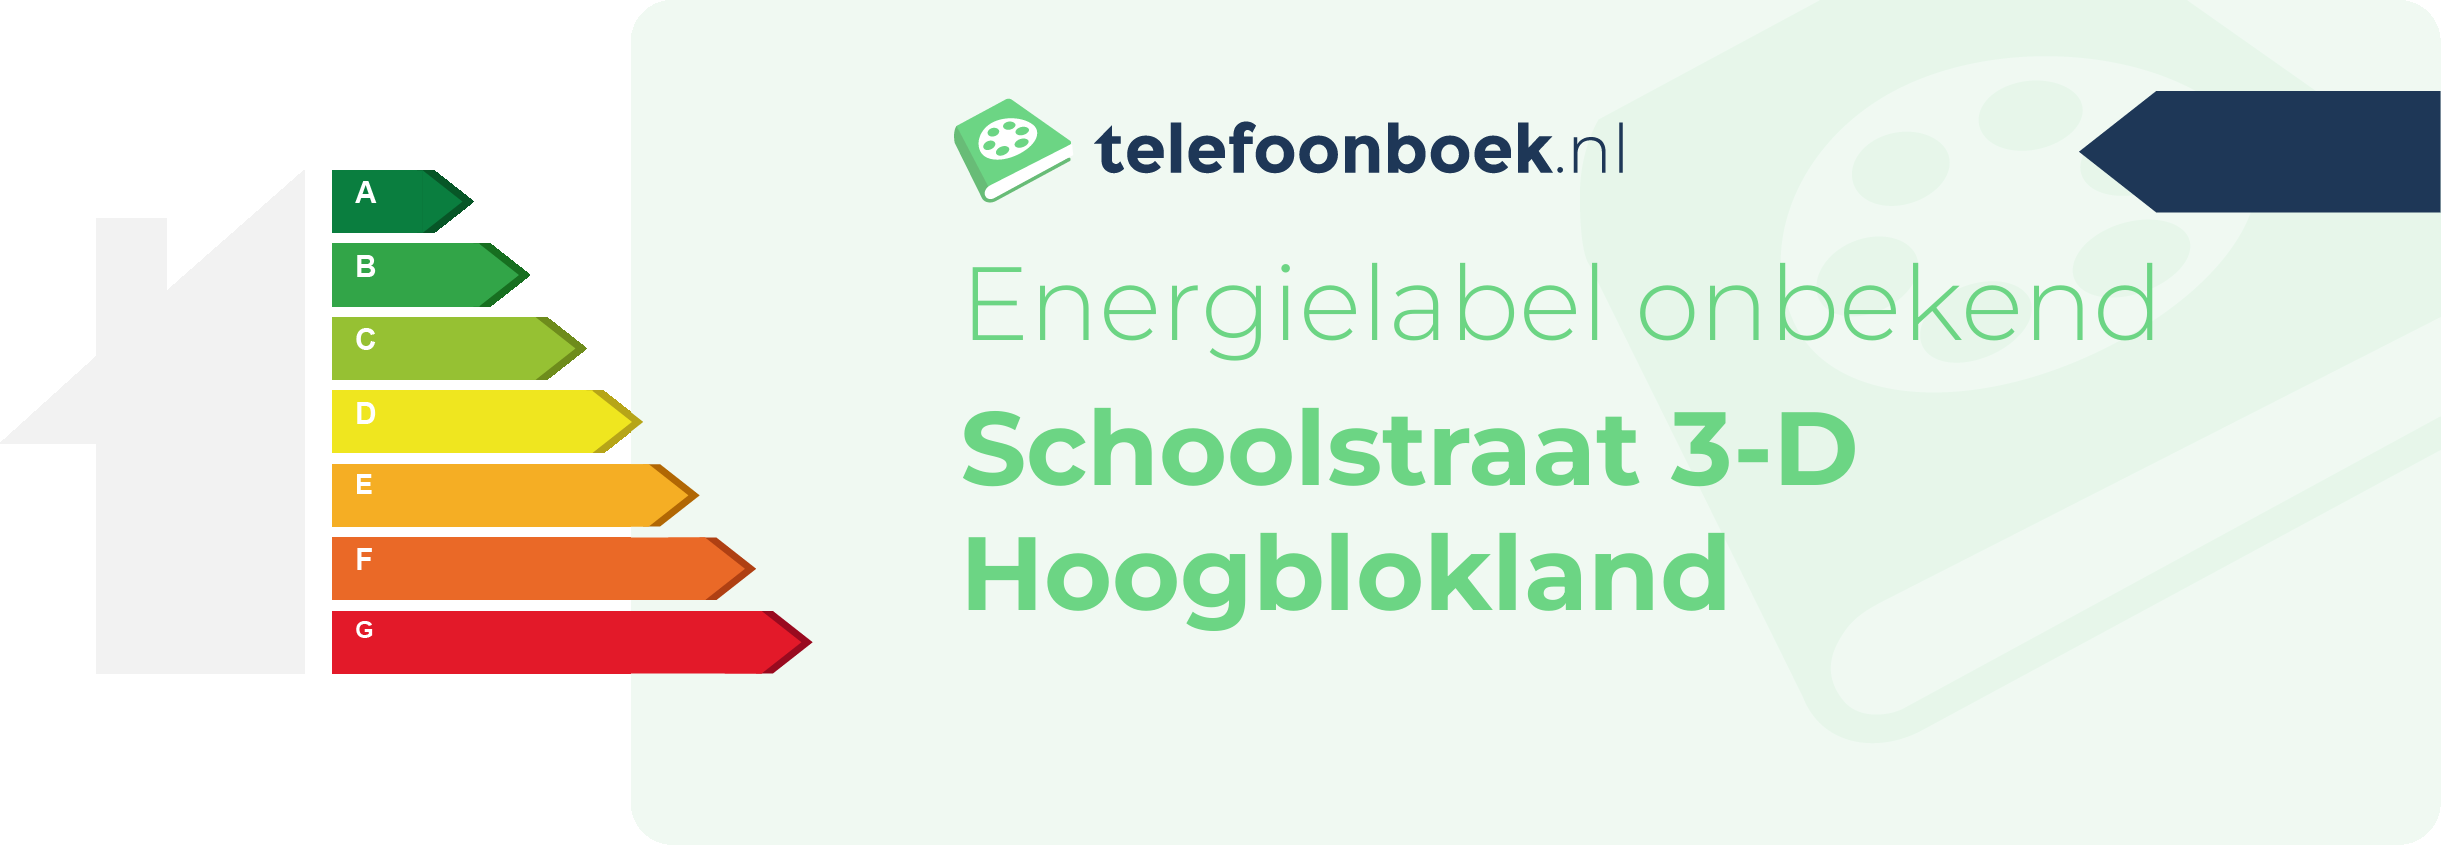 Energielabel Schoolstraat 3-D Hoogblokland